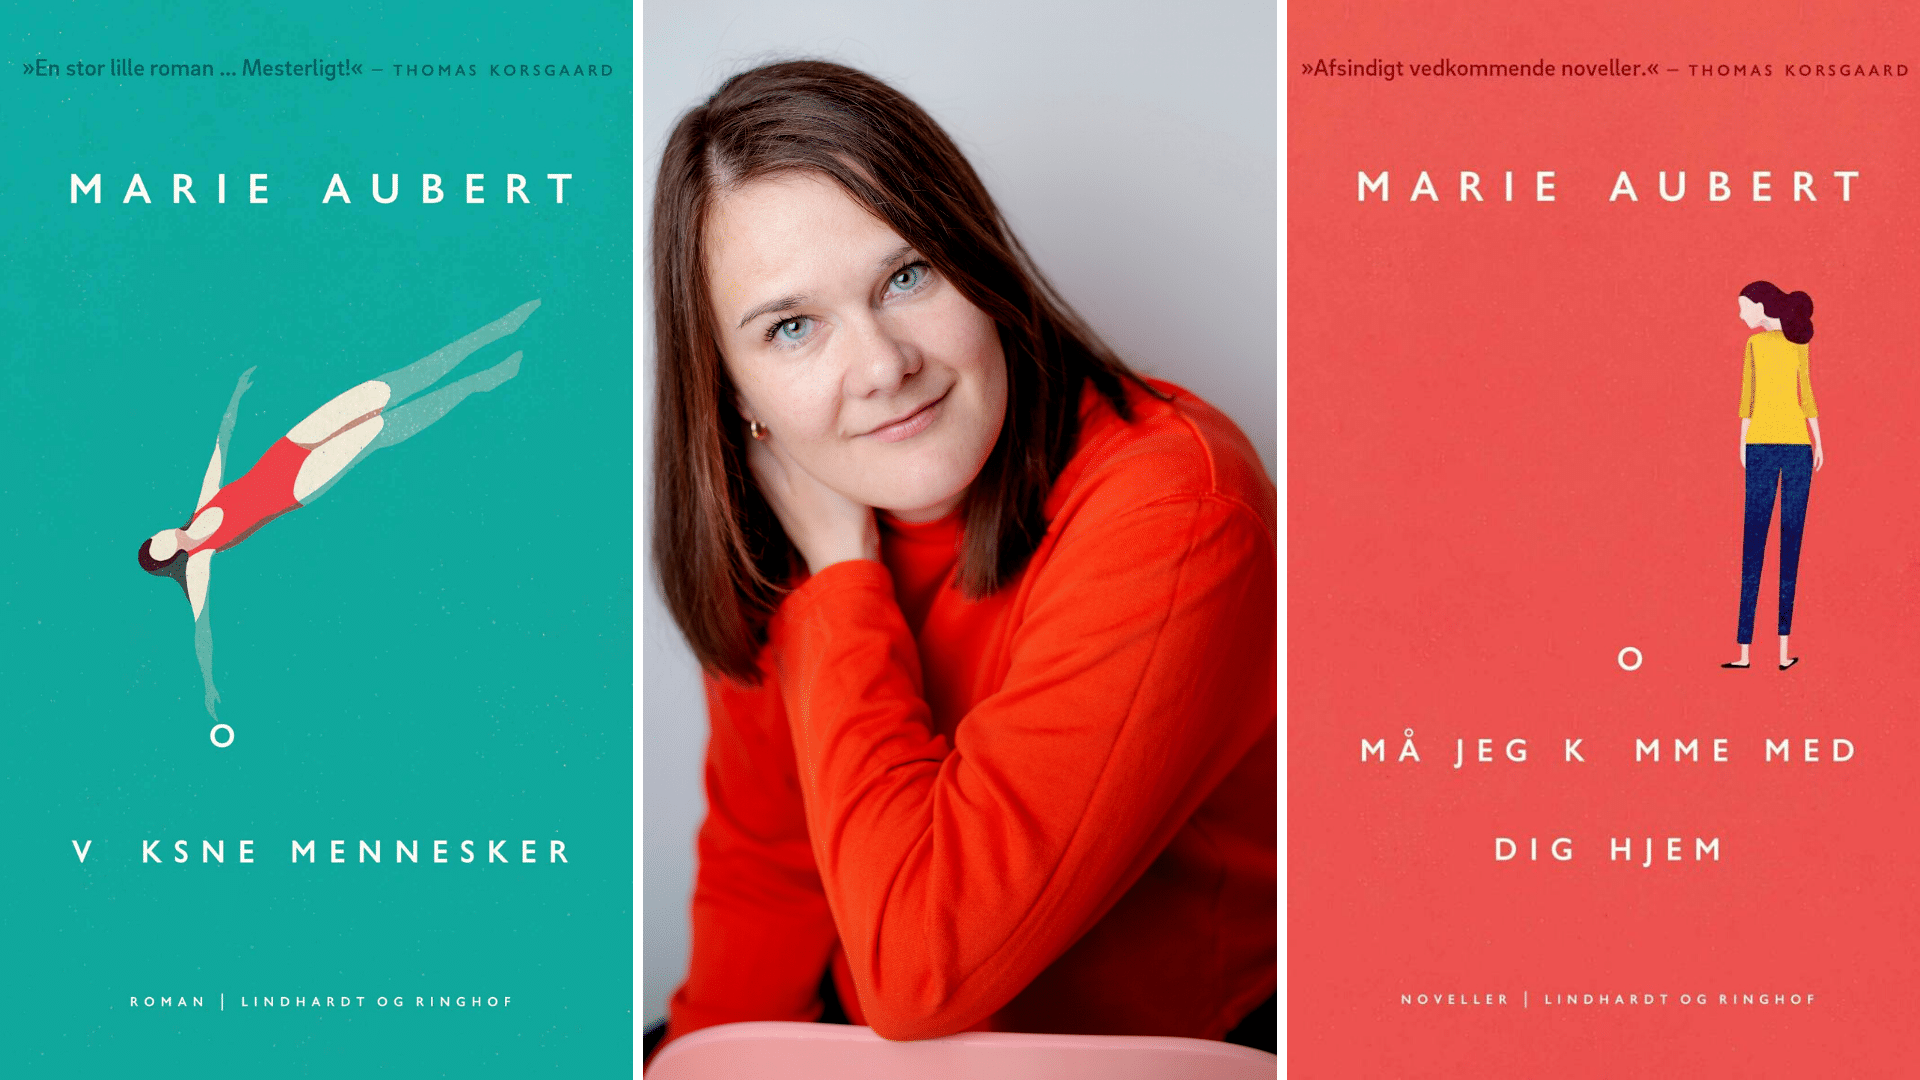 Marie Aubert, Voksne mennesker, Må jeg komme med dig hjem, norsk litteratur, noveller, novellesamling